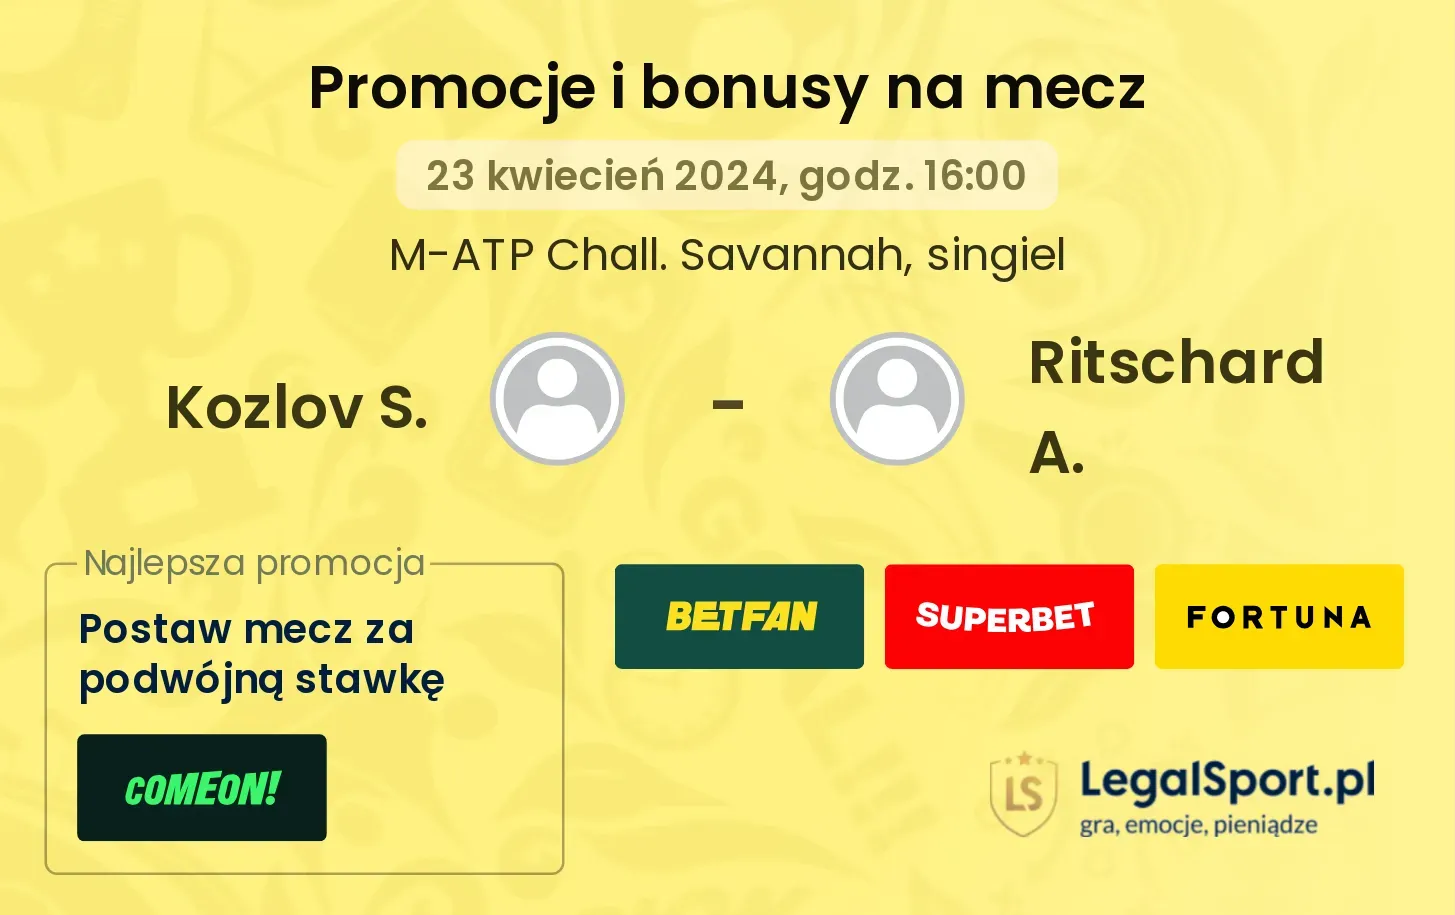 Kozlov S. - Ritschard A. promocje bonusy na mecz